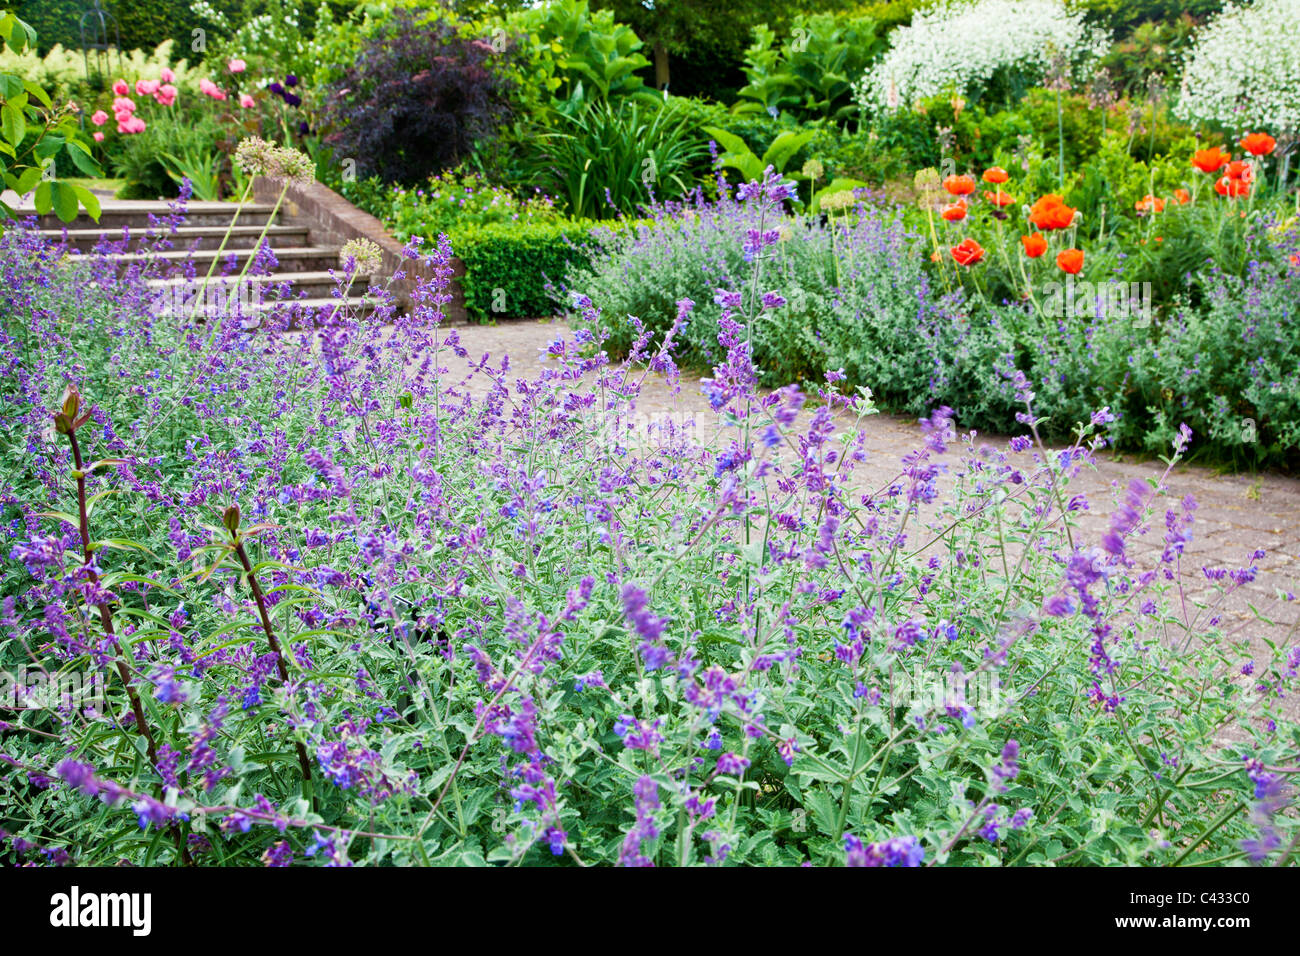 Nepeta o nepitella fodera un mattone sentiero lastricato che conduce a passi attraverso il paese giardino alla RHS Wisley, Surrey, England, Regno Unito Foto Stock